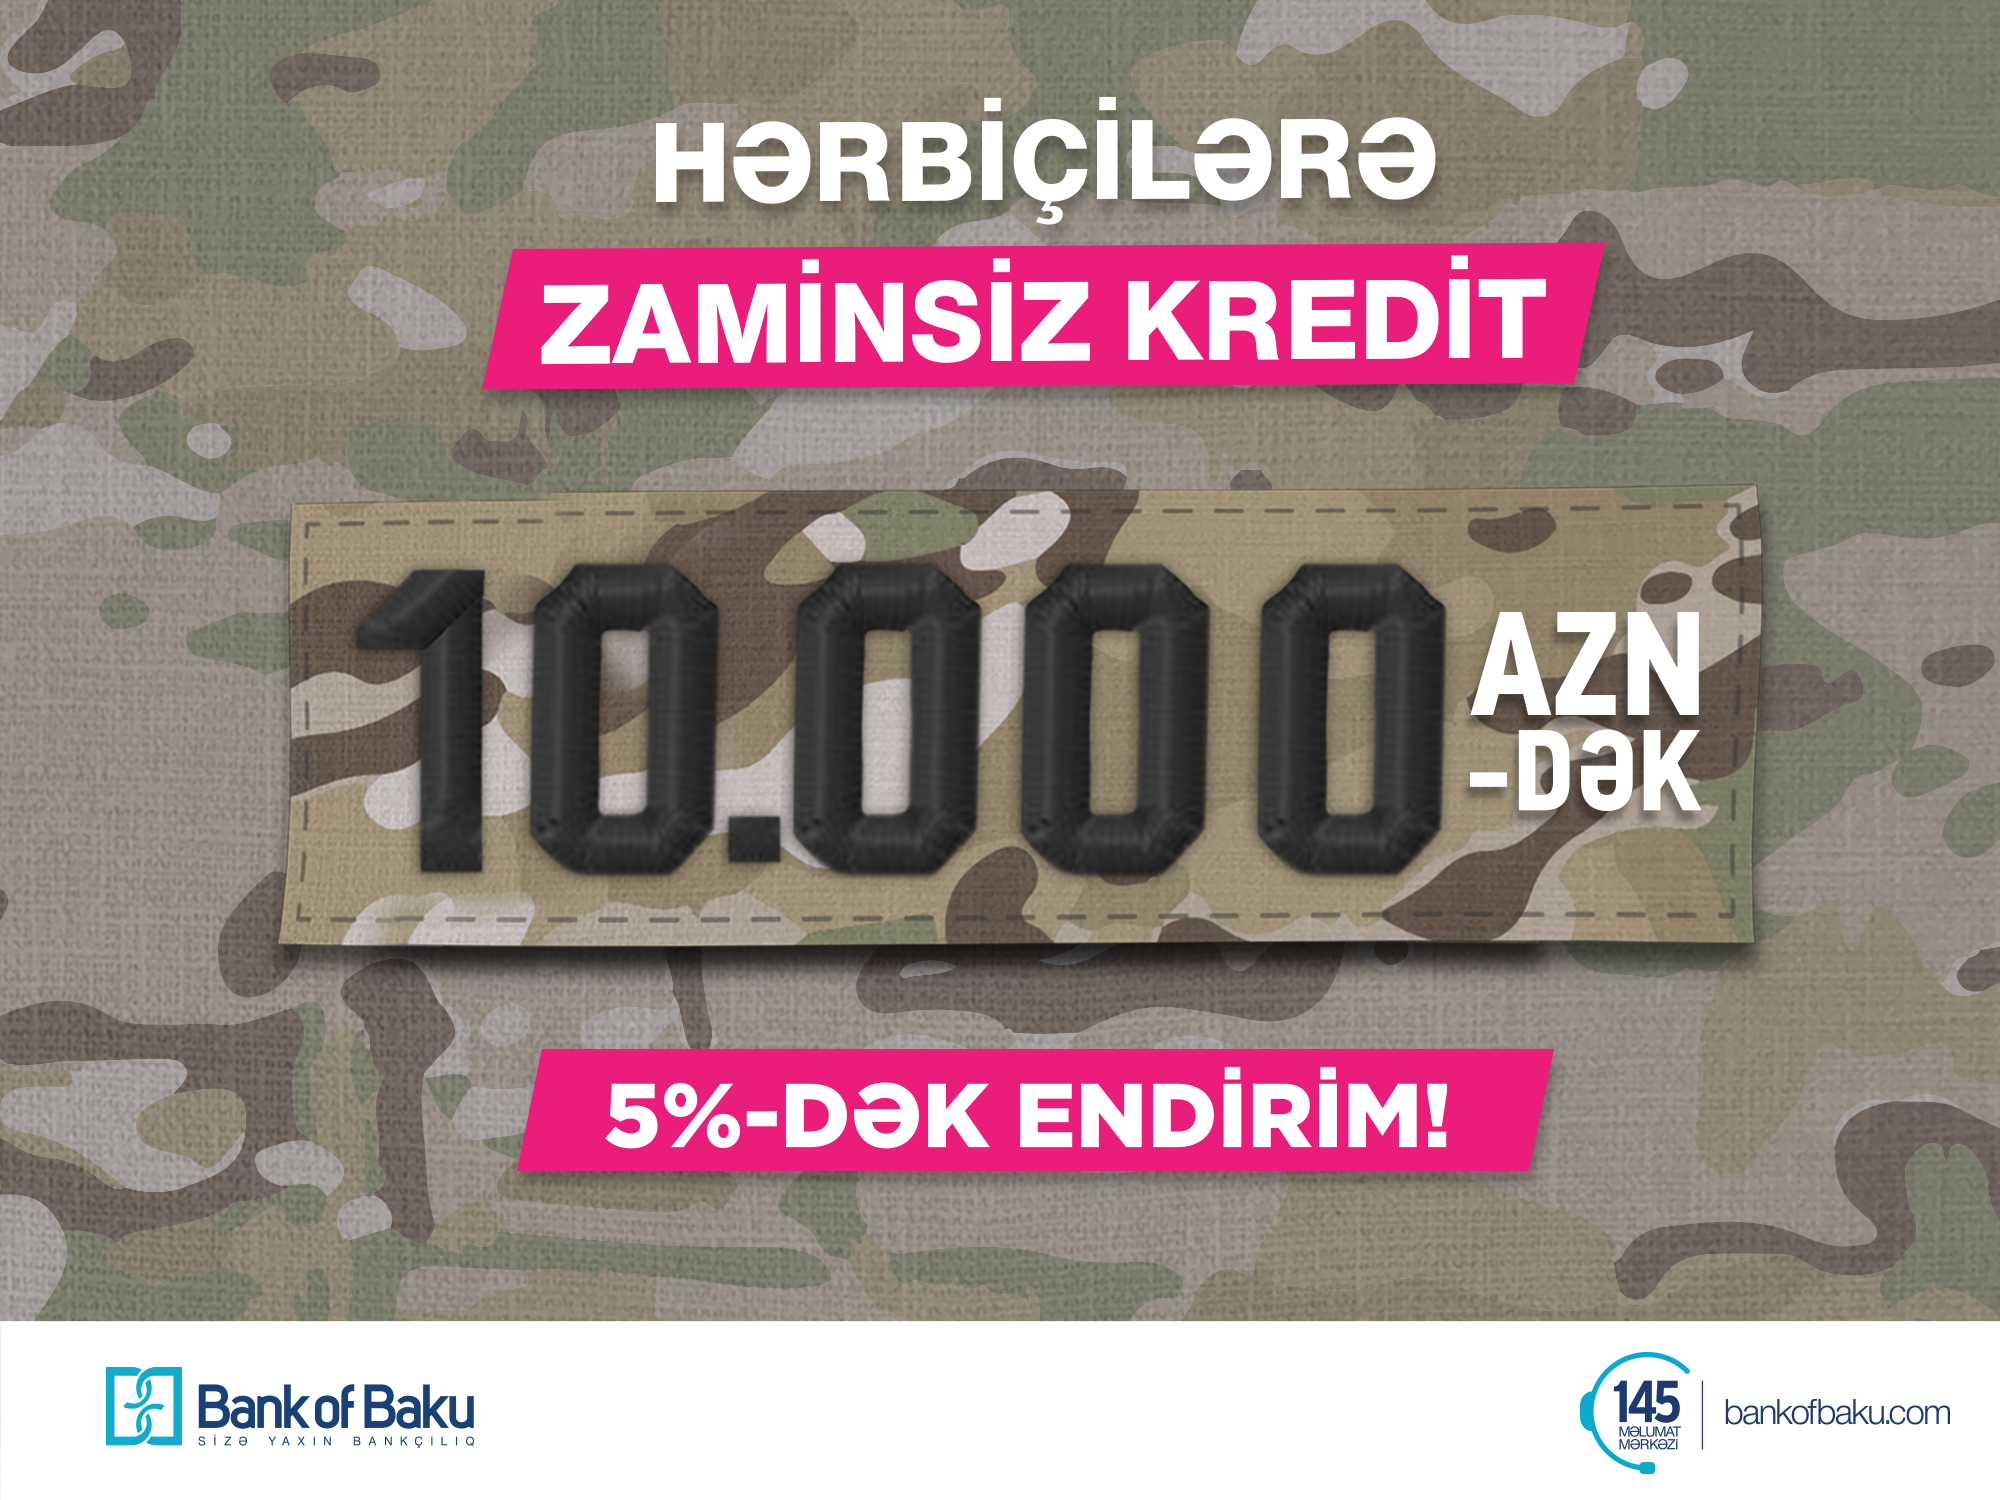 Bank of Baku-dan HƏRBİÇİLƏRƏ “10.000 AZN-dək ZAMİNSİZ KREDİT və 5%-dək ENDİRİM”!